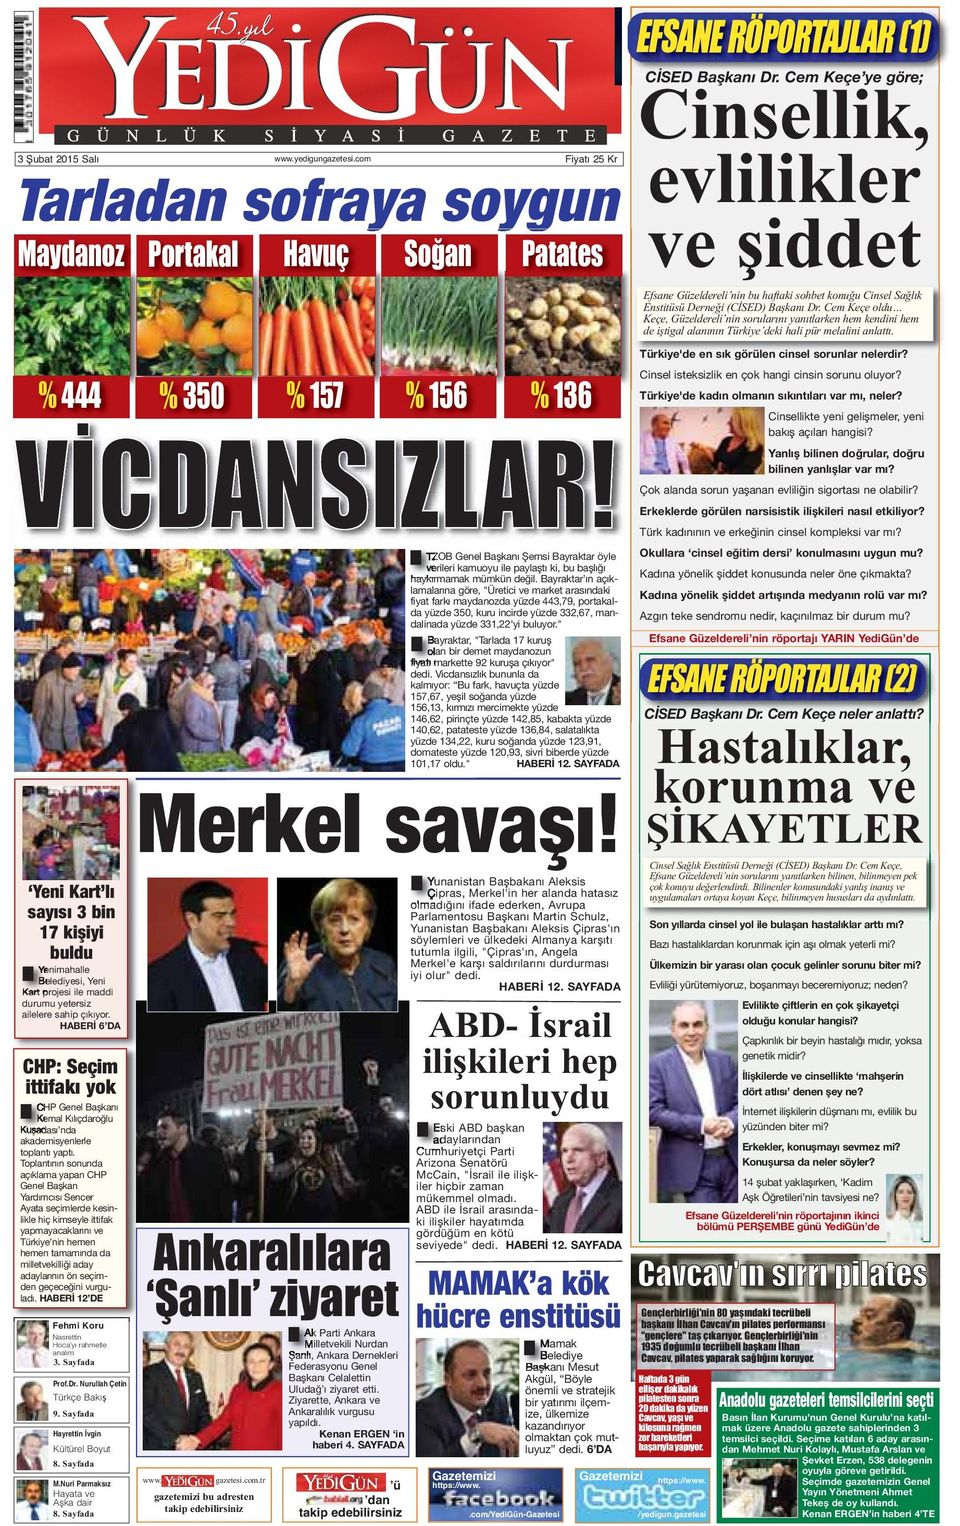 maddi durumu yetersiz ailelere sahip çıkıyor. HABERİ 6 DA CHP: Seçim ittifakı yok CHP Genel Başkanı Kemal Kılıçdaroğlu Kuşadası nda akademisyenlerle toplantı yaptı.